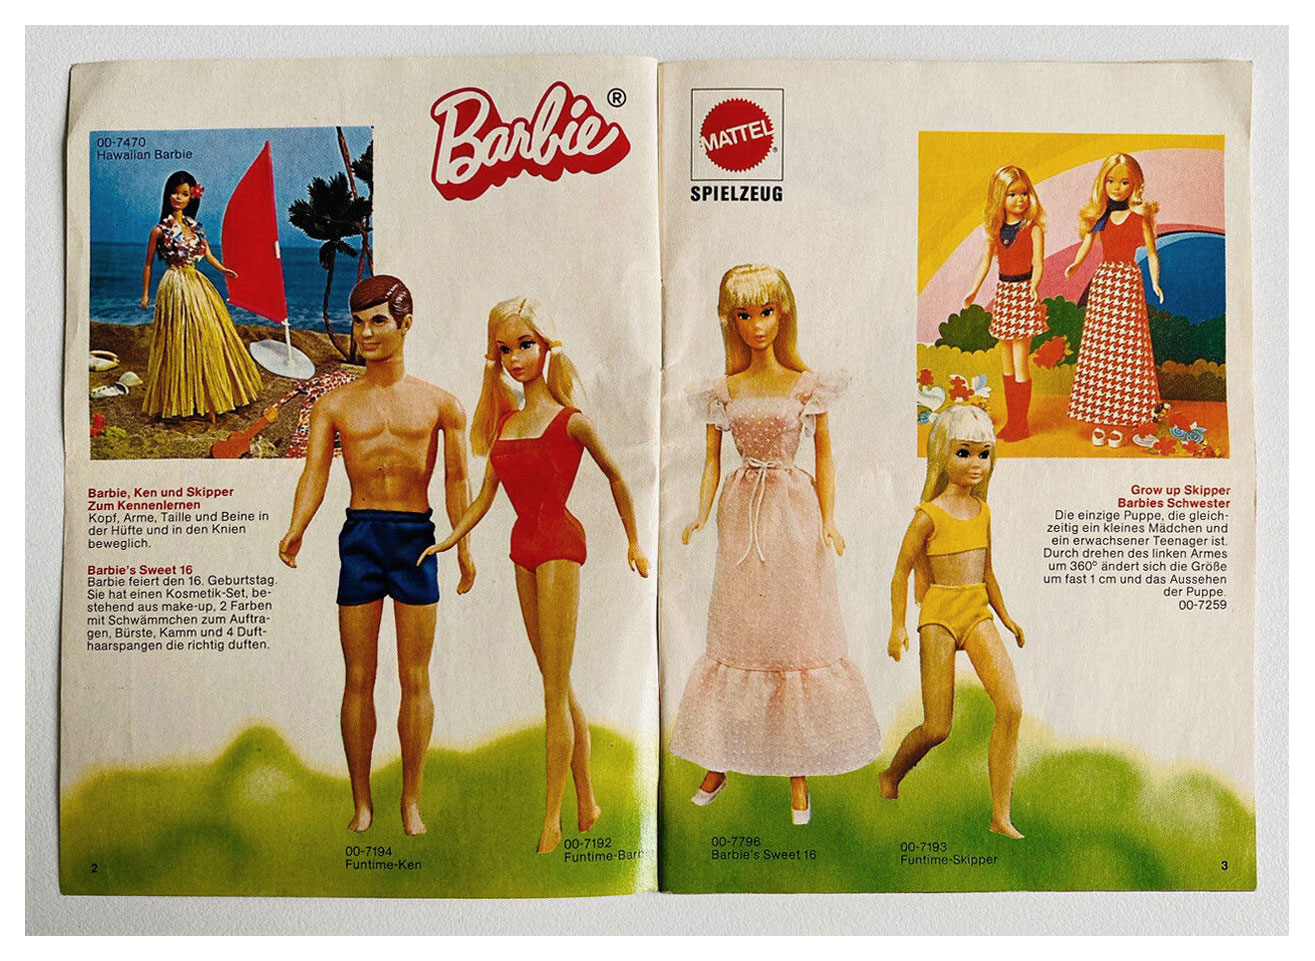 1975 German Barbie booklet